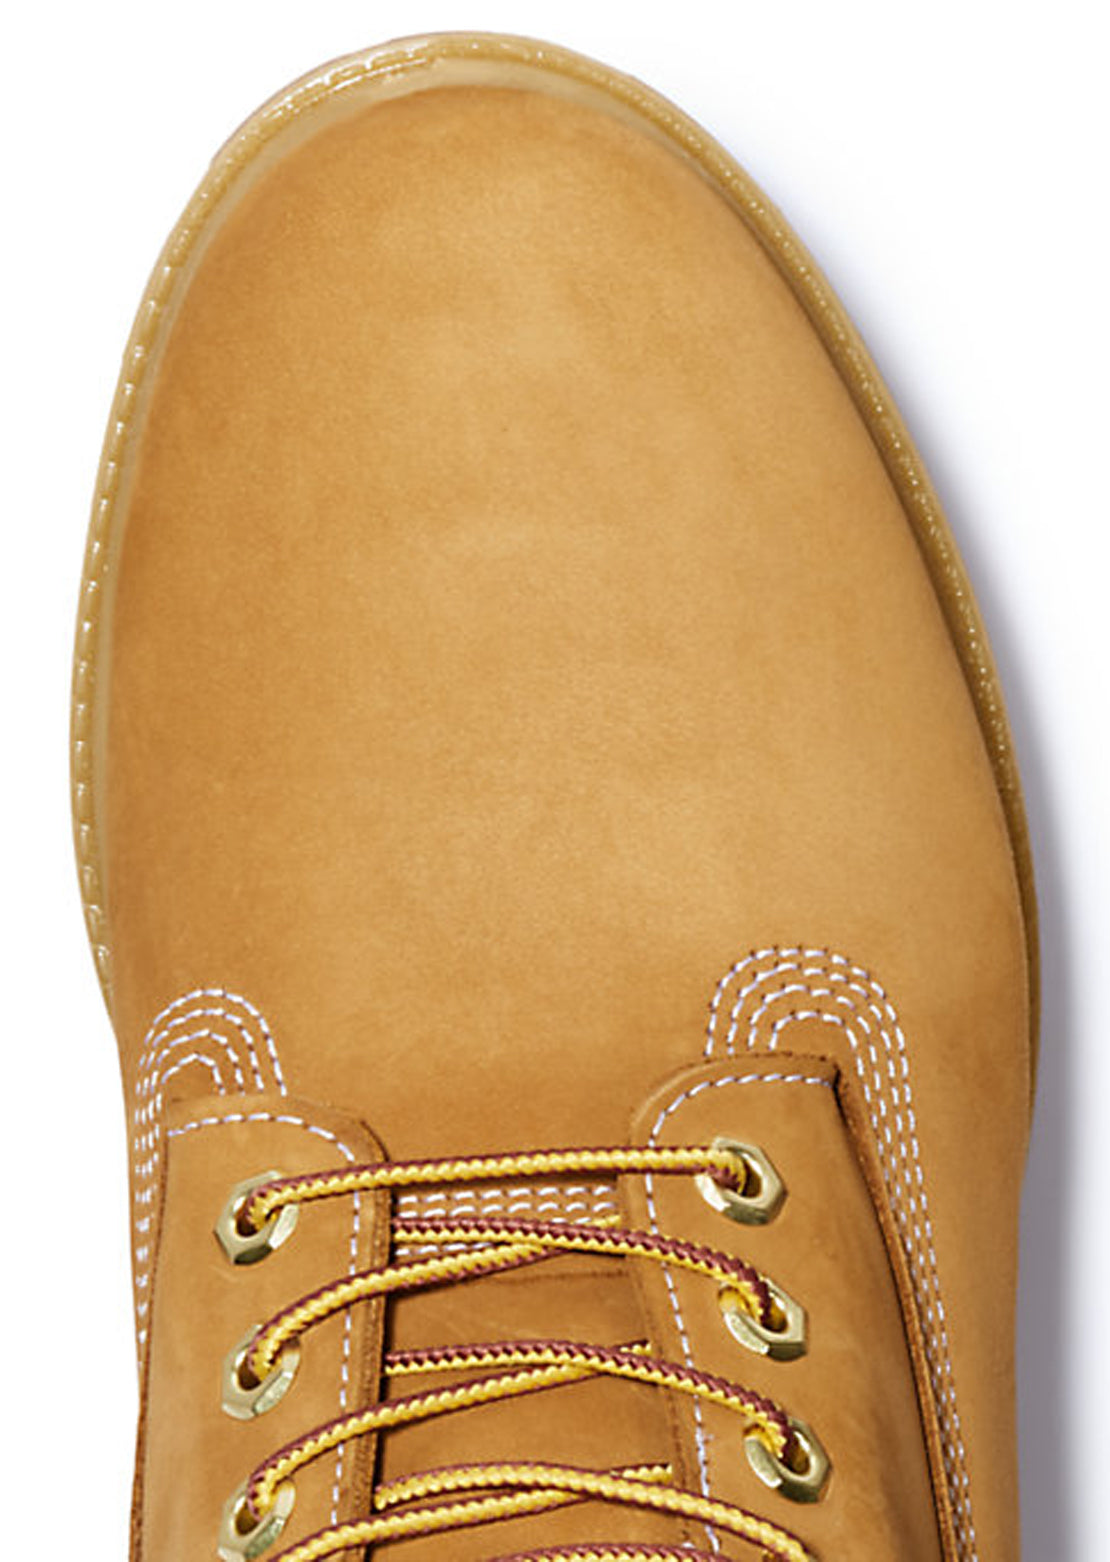 Timberland Men&#39;s 6 Inch Premium Waterproof Boots Wheat/Yellow